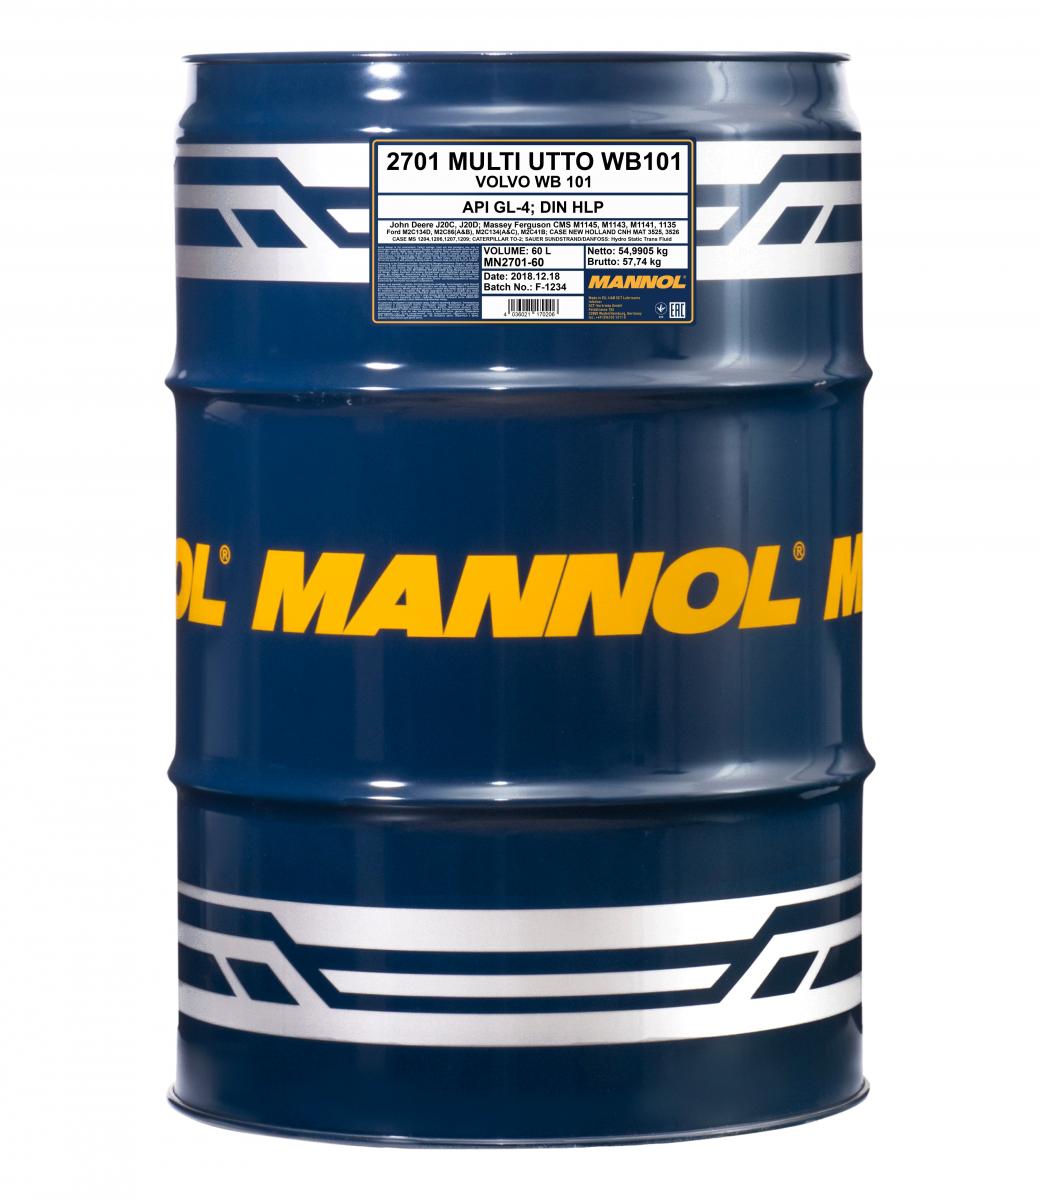 MANNOL Multi UTTO WB 101 API GL-4 60l Fass - Traktor & Baumaschinen- Motor-  u. Multifunktionsöle - Mannol - Öl Marken - Öle 